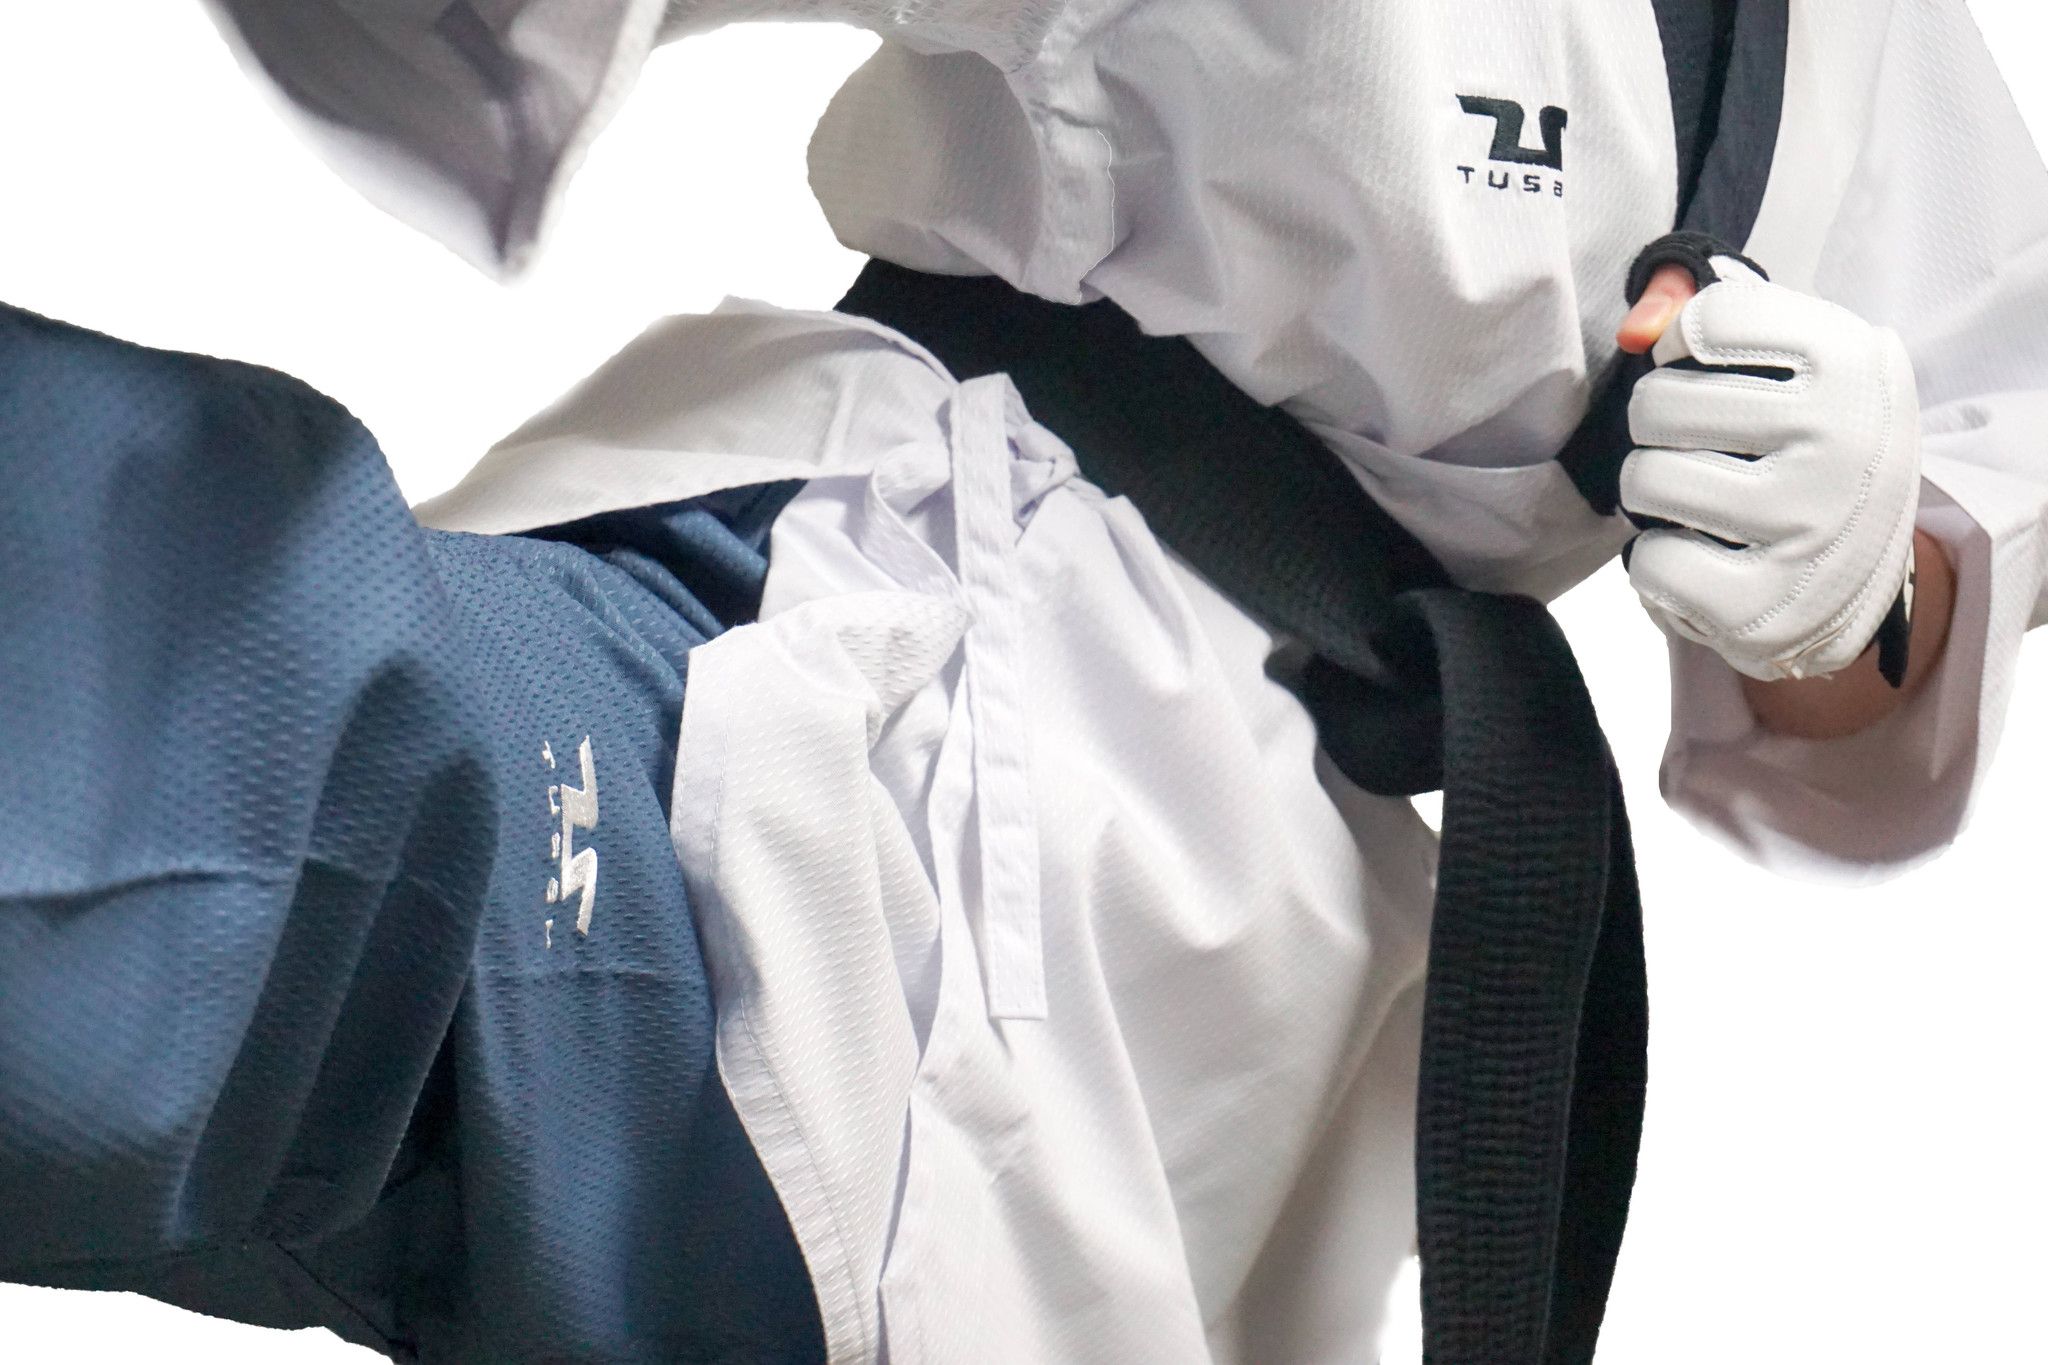 Poomsae Professional Femminile Tusah per Taekwondo Omologato WT Made in Korea per forme e competizioni